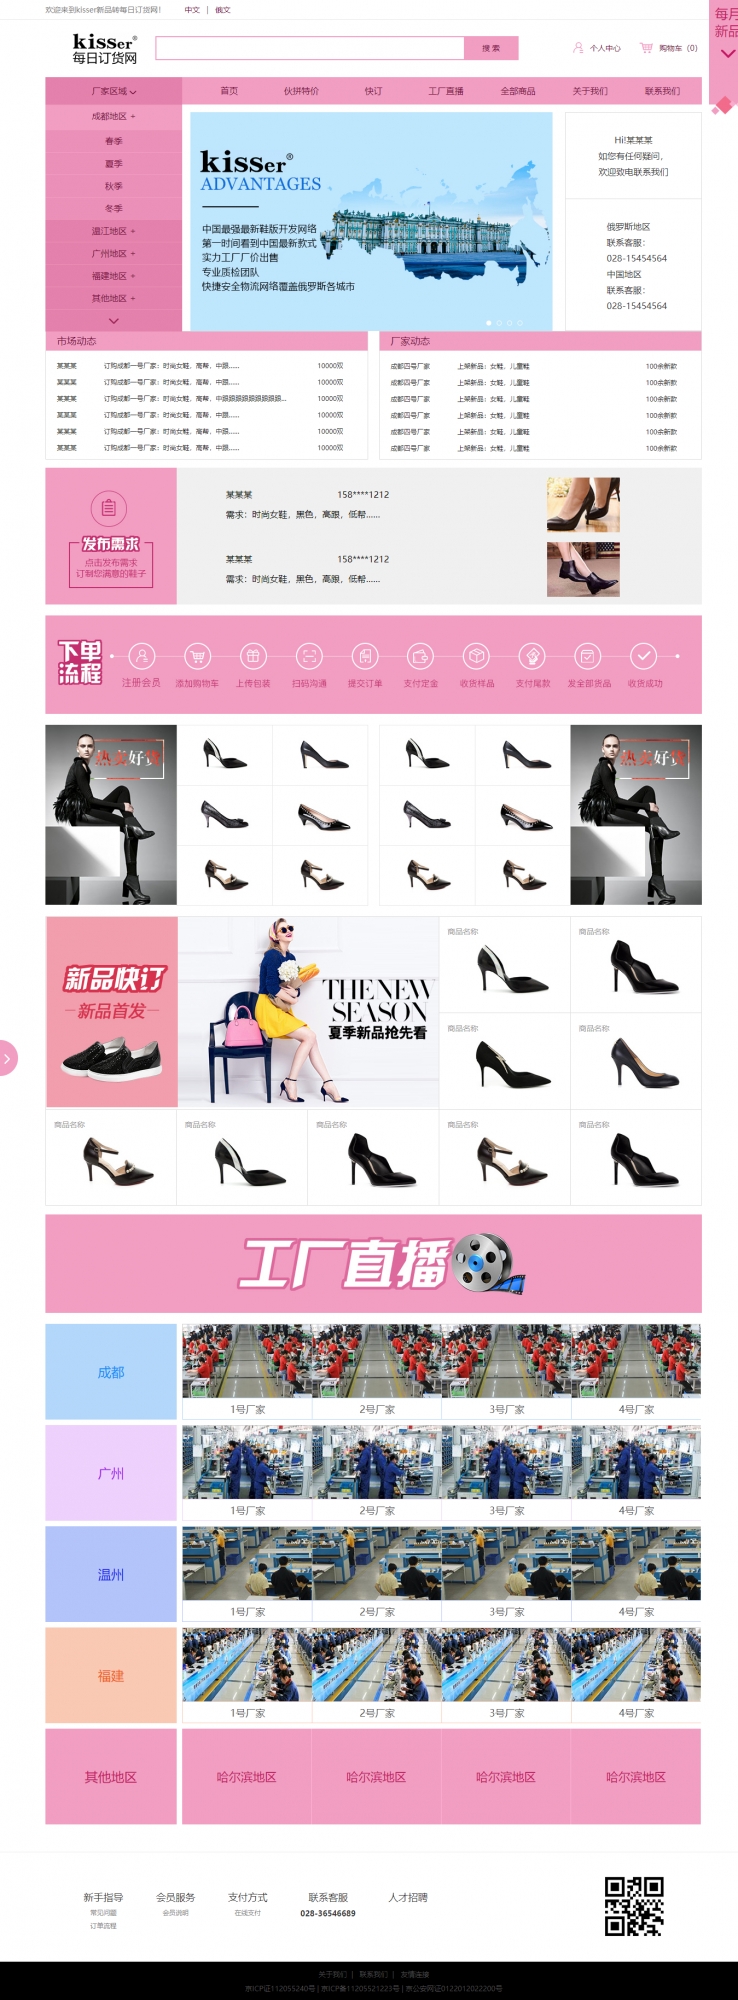 紫色简洁风格的鞋厂批发商城网站源码下载